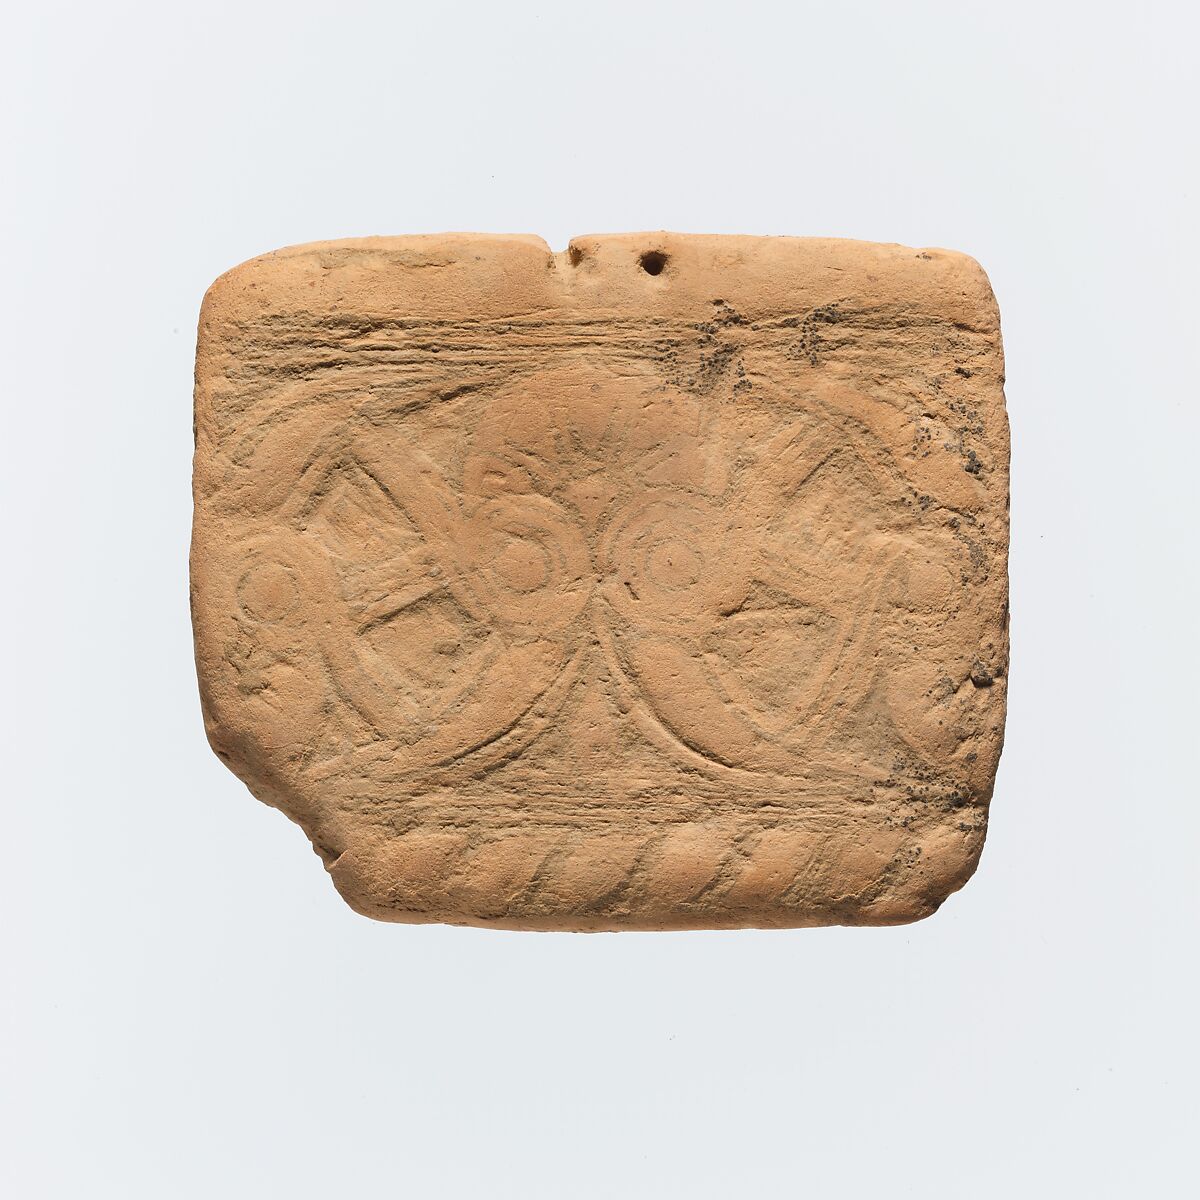 Terracotta plaque, Terracotta, Greek, Cretan 